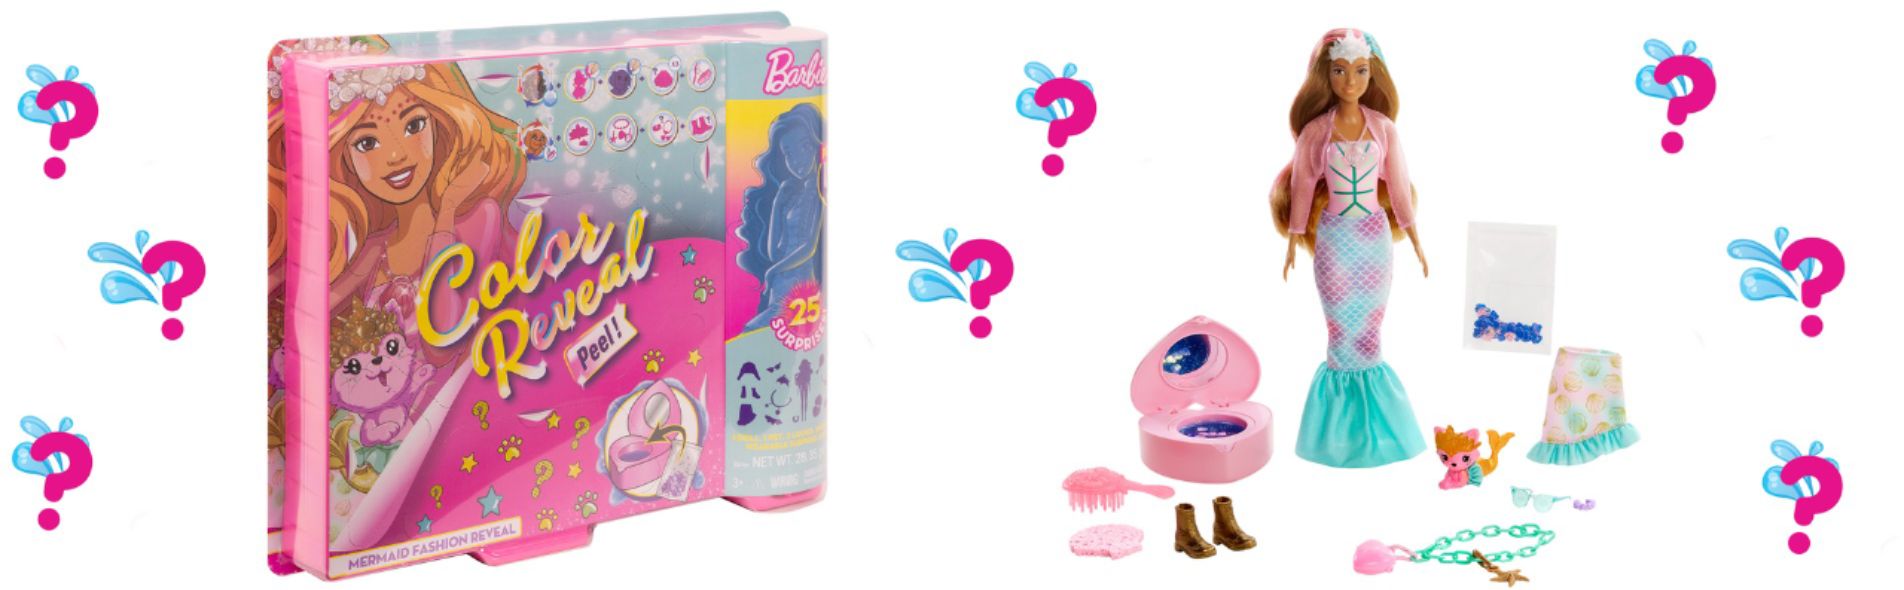 Best Buy: Barbie Color Reveal Peel Mermaid Fashion Doll GXV93